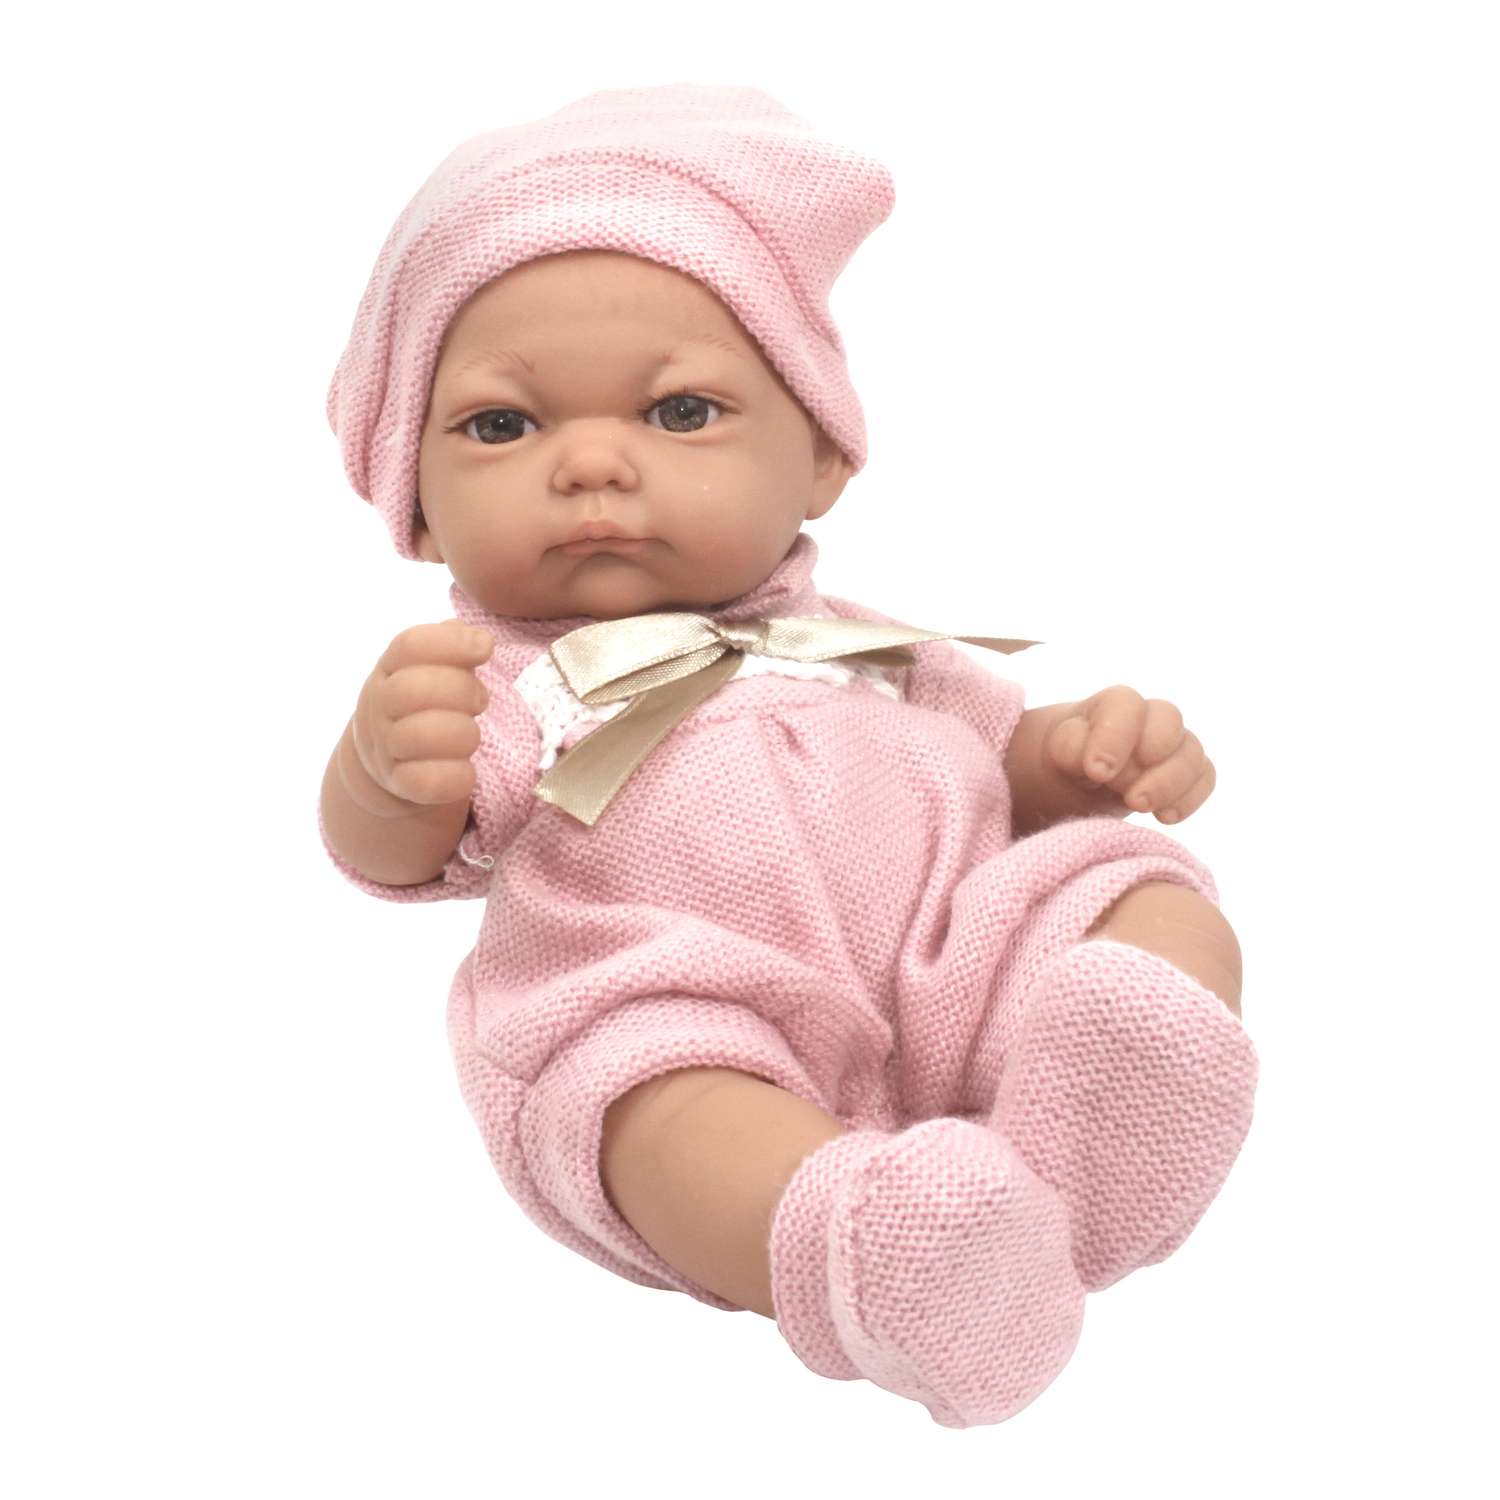 Кукла пупс 1TOY Premium реборн 25 см в розовом комбинезоне пинетках и шапочке Т15467 - фото 2